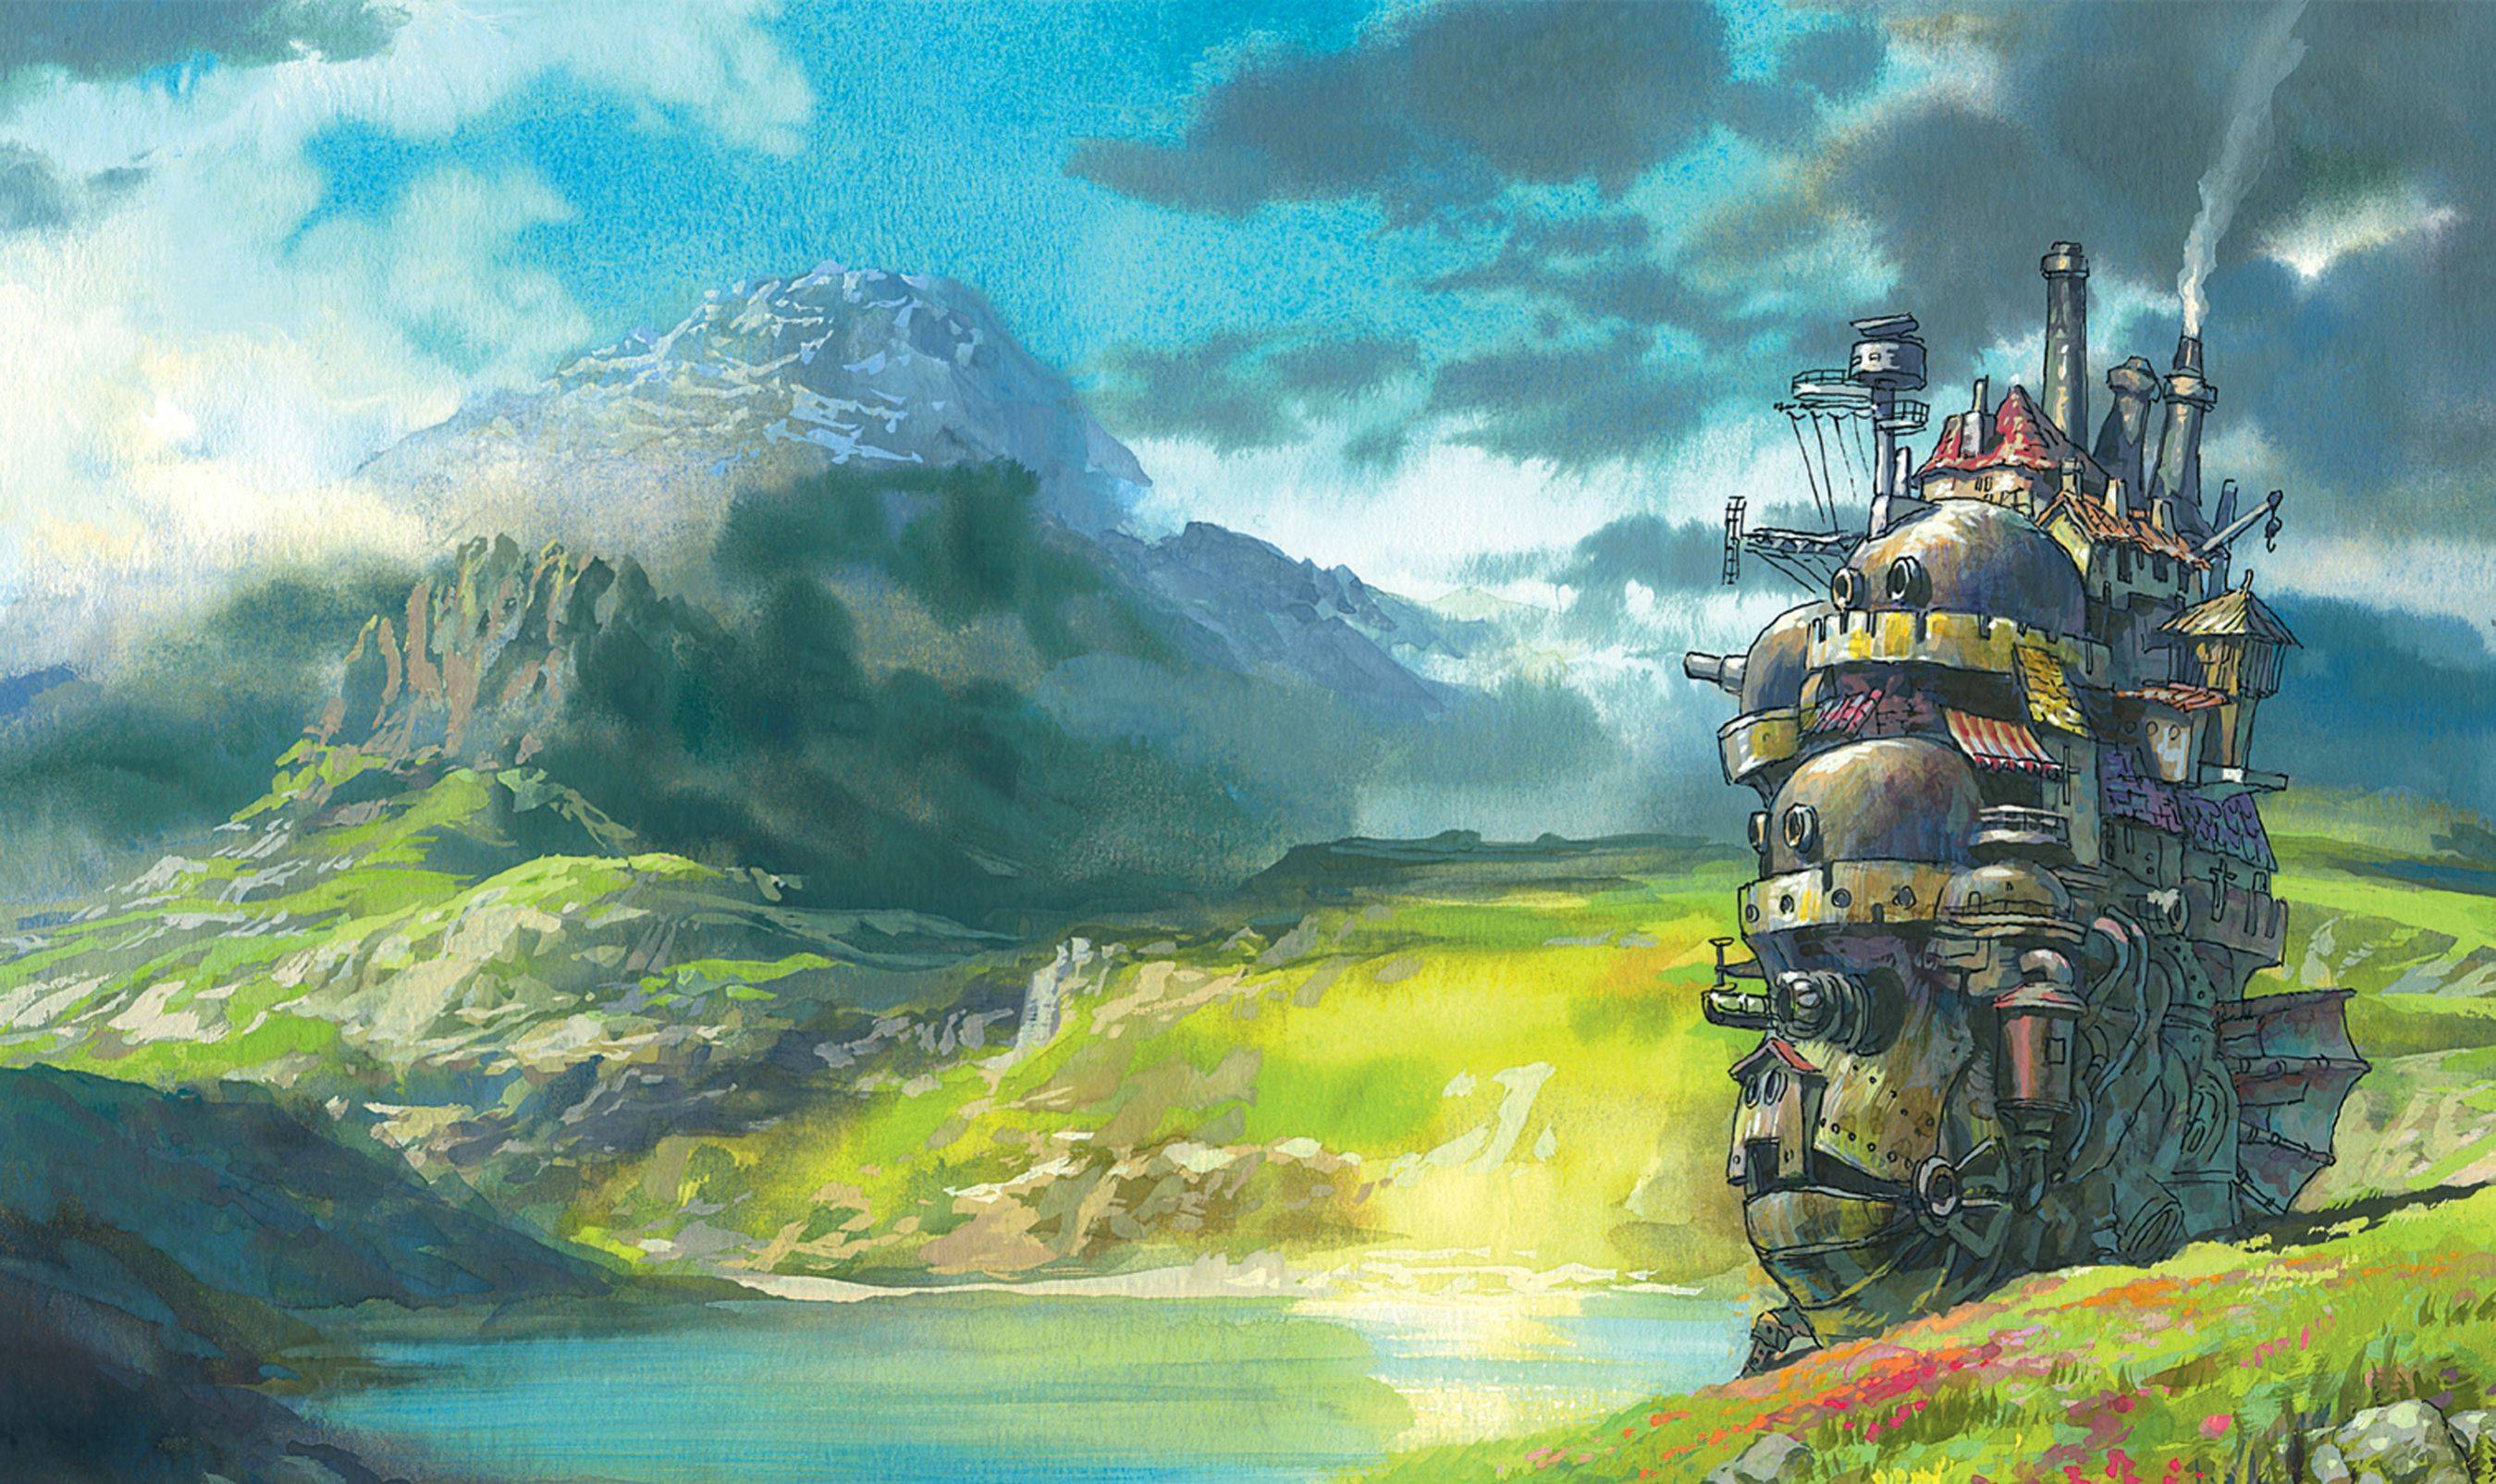 Studio Ghibli HD Wallpaper | 1920x1080 | ID:46392